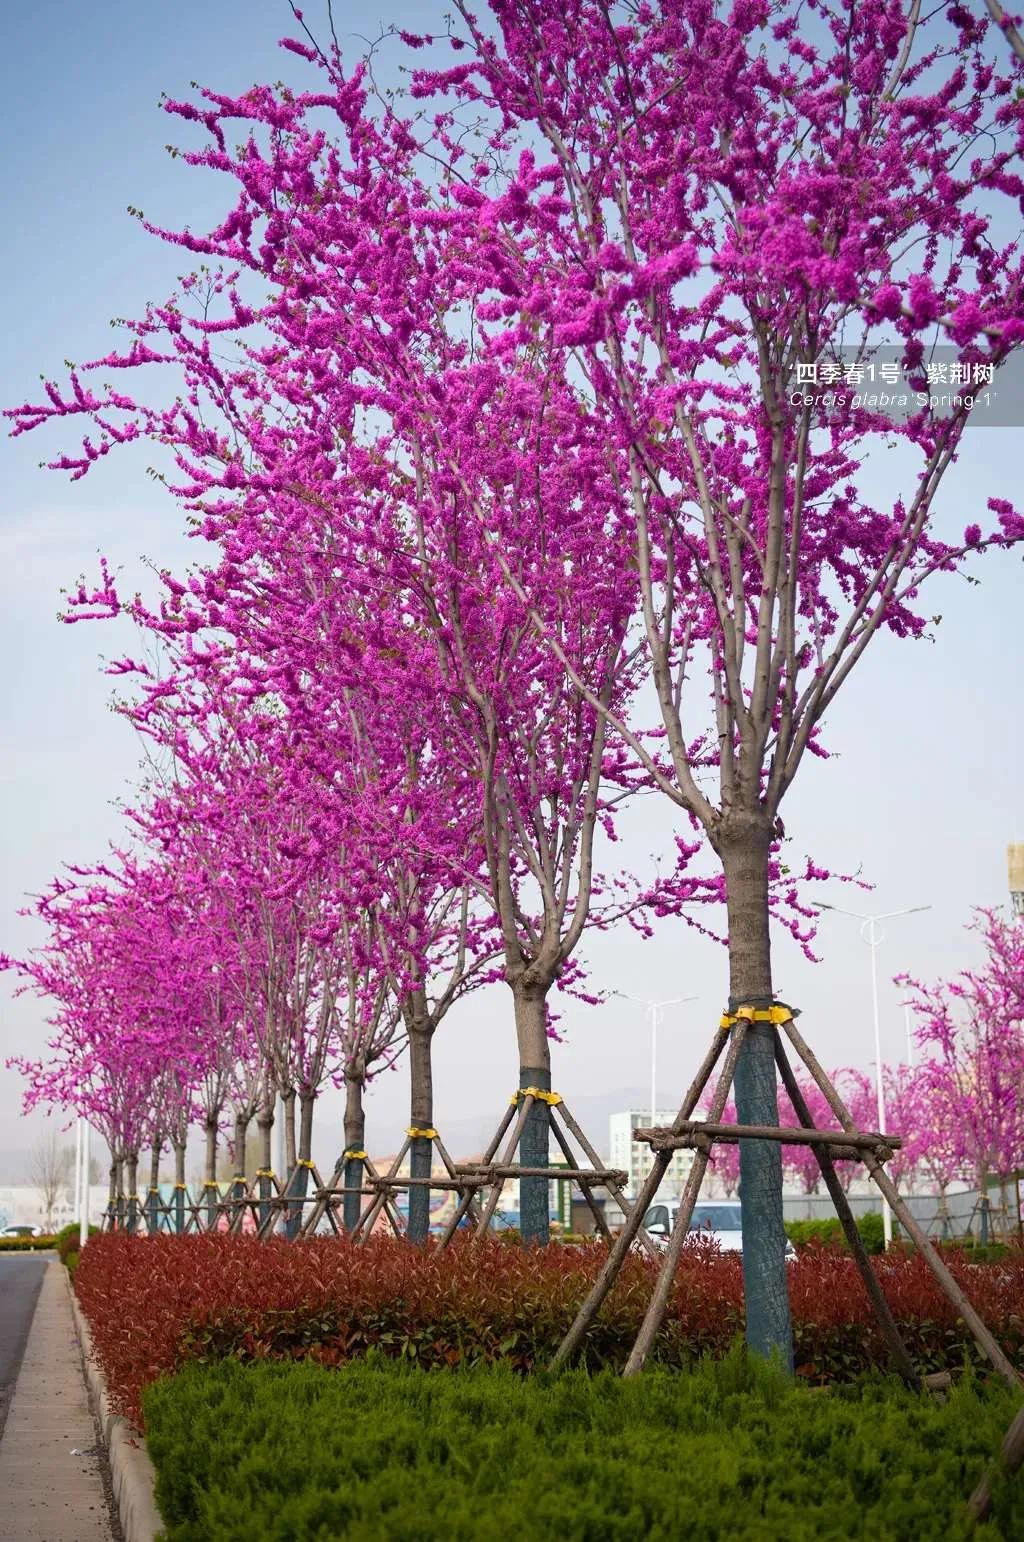 唐宋时期,民间常栽紫荆树